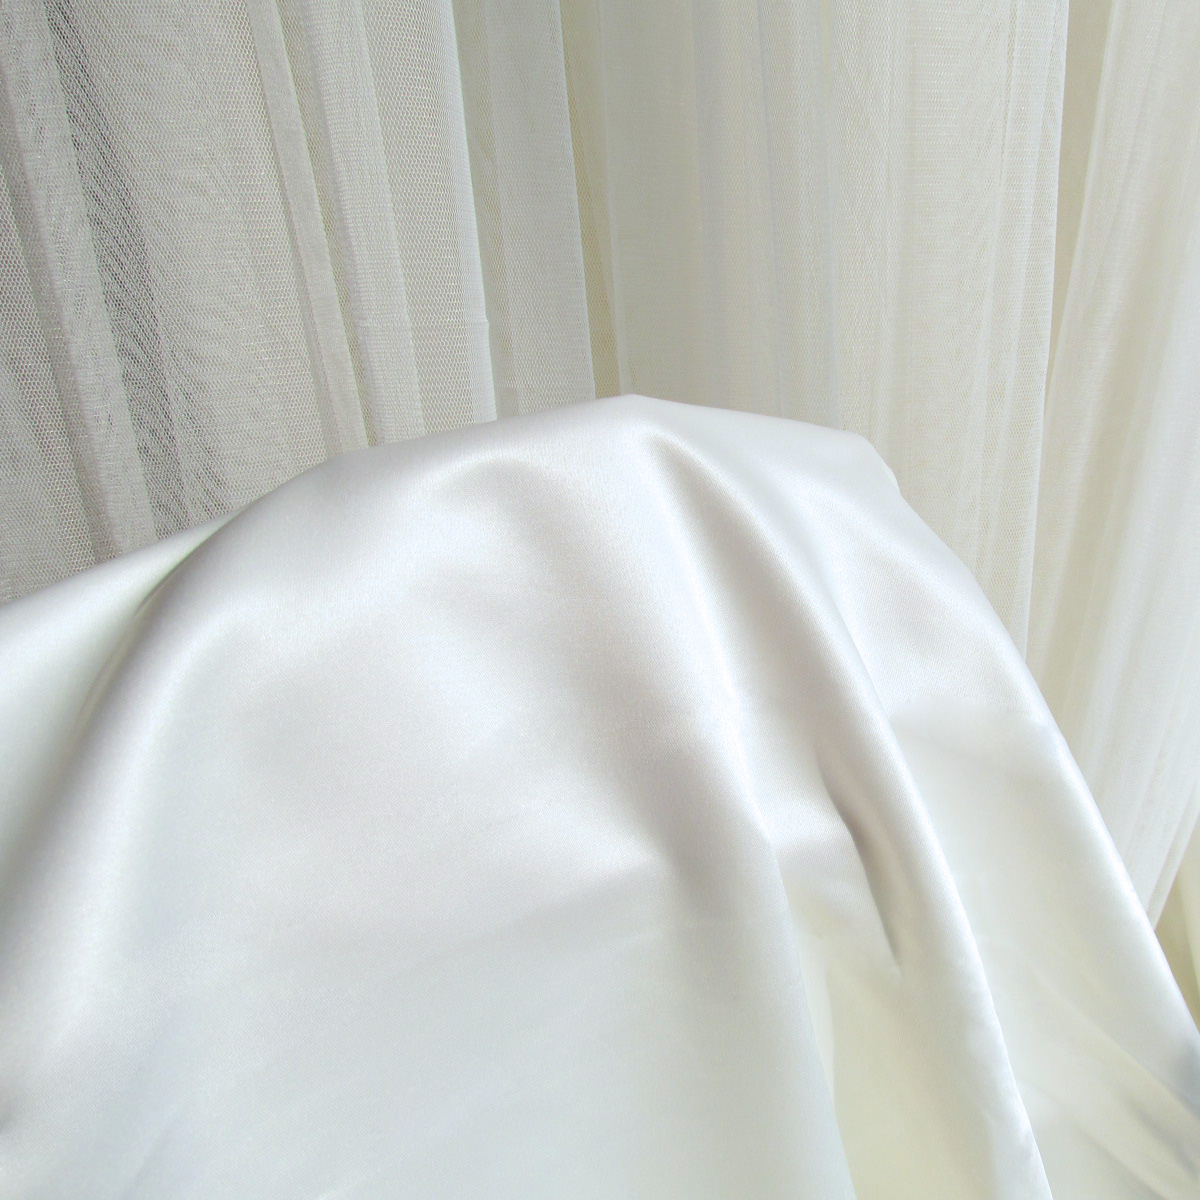 绸缎半遮光窗帘布料高密纯色布帘遮阳衬布内衬双面网红直播背景帘